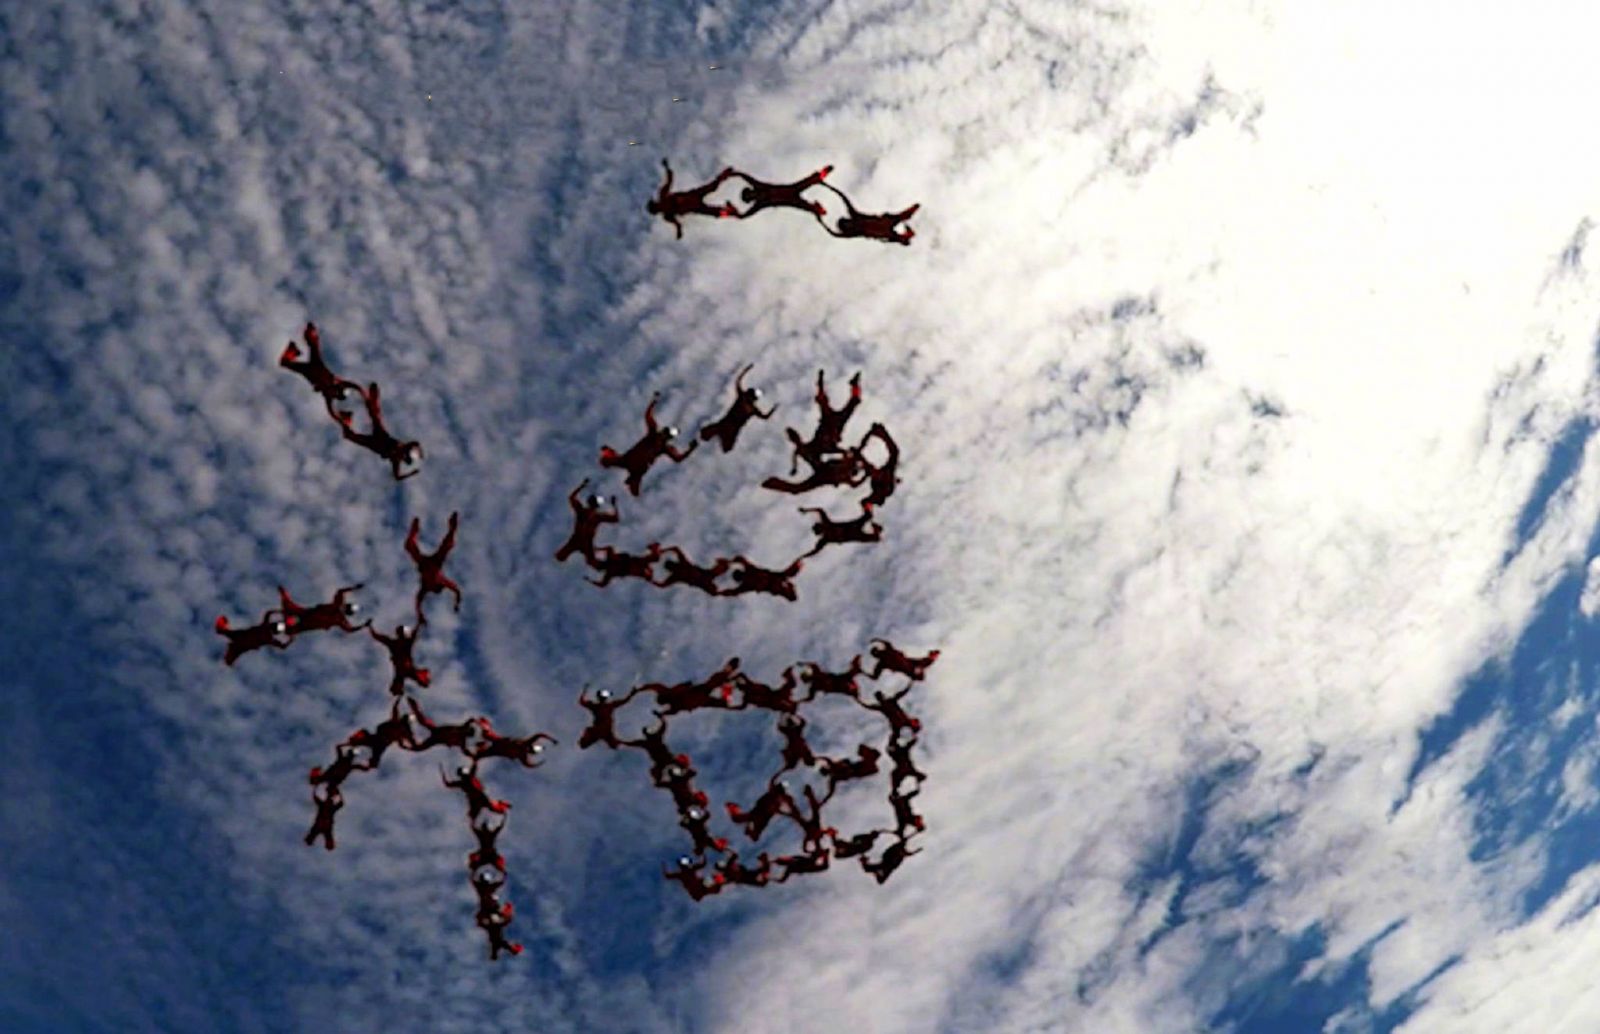 跳傘運動員5,500呎高空砌福字